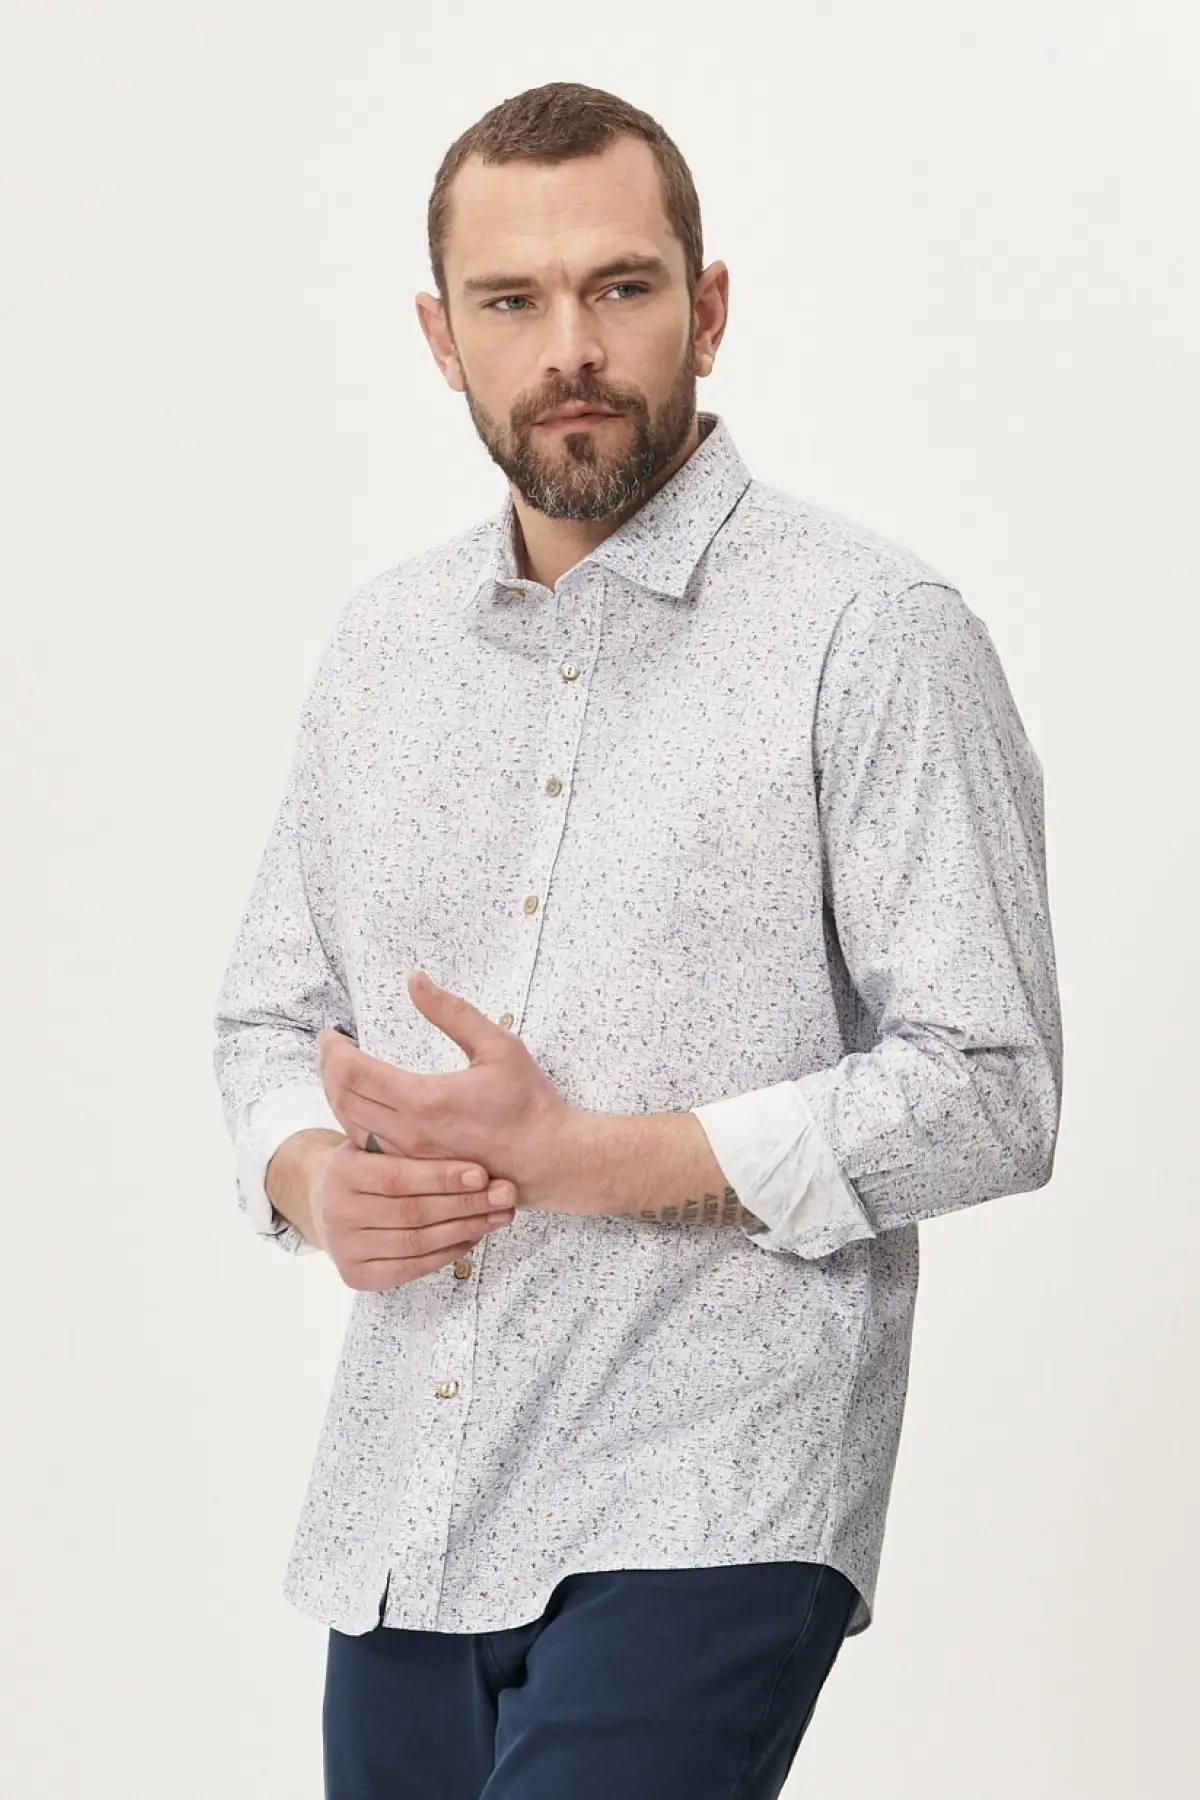 

Мужская приталенная рубашка с узким вырезом, бело-синяя рубашка с принтом и воротником на пуговицах